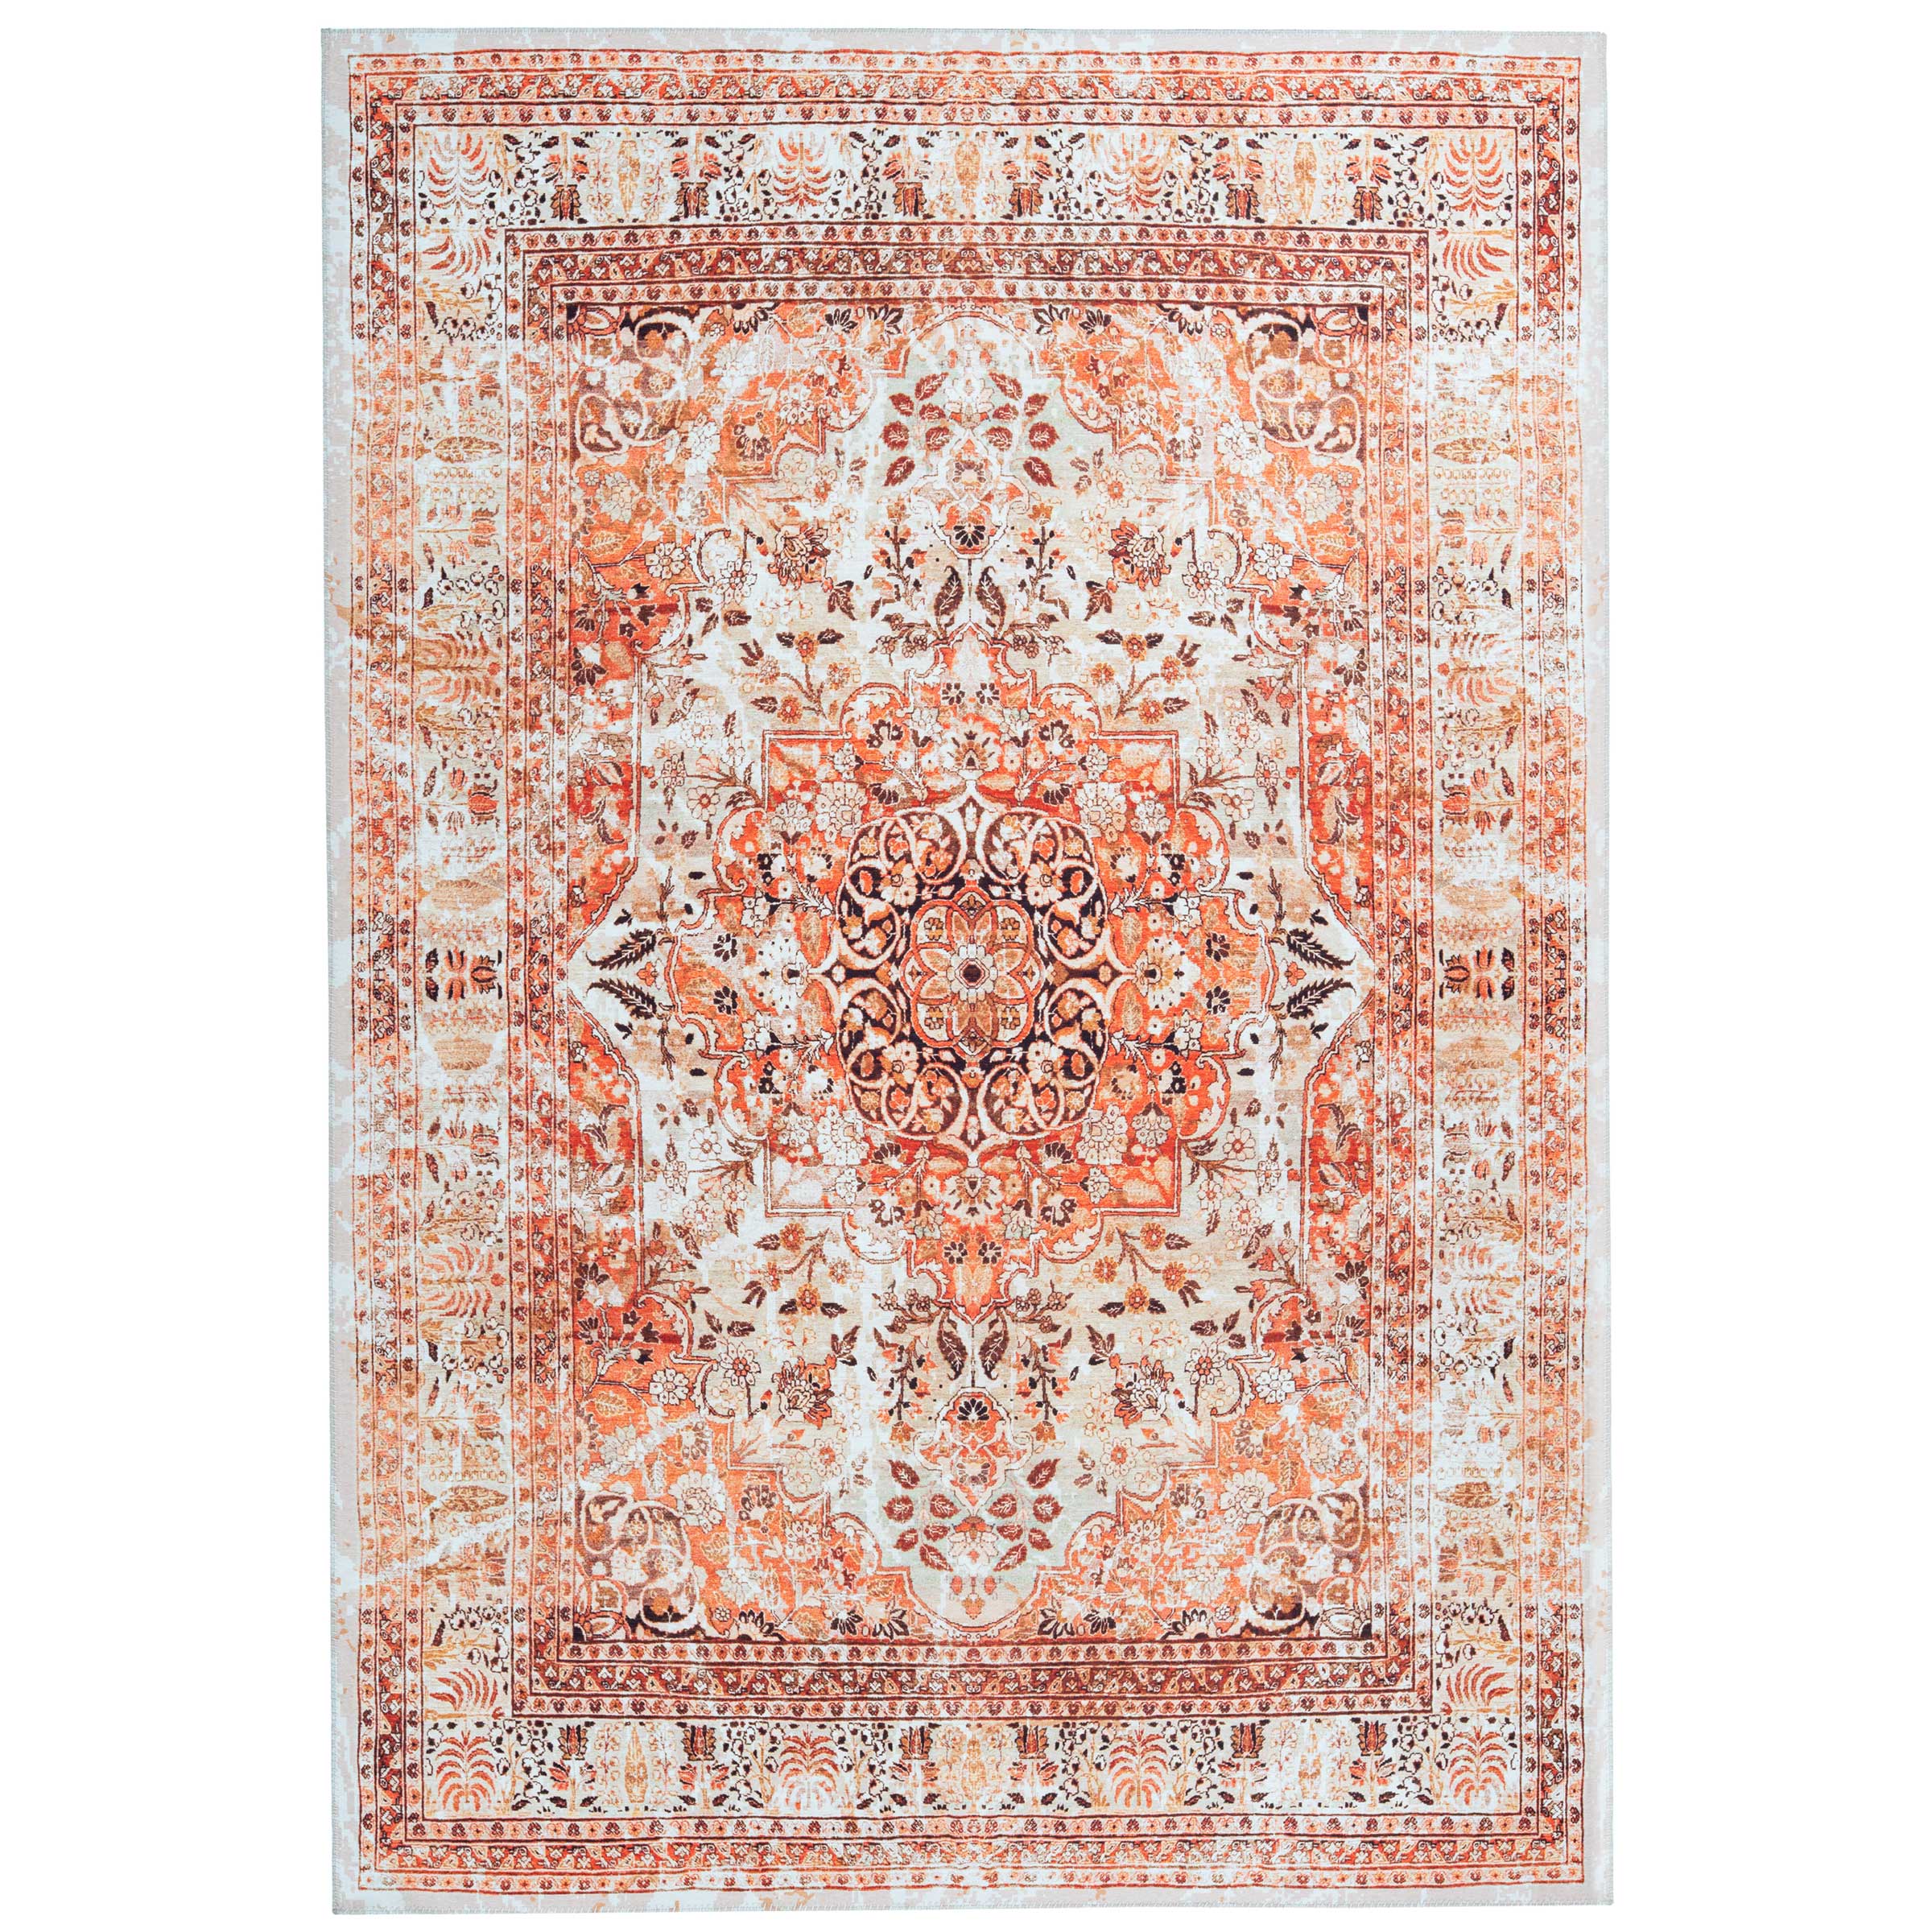 Hulpeloosheid gemeenschap Brig Perzisch tapijt kopen | Jouw Perzische vloerkleed vertrouwd bestellen